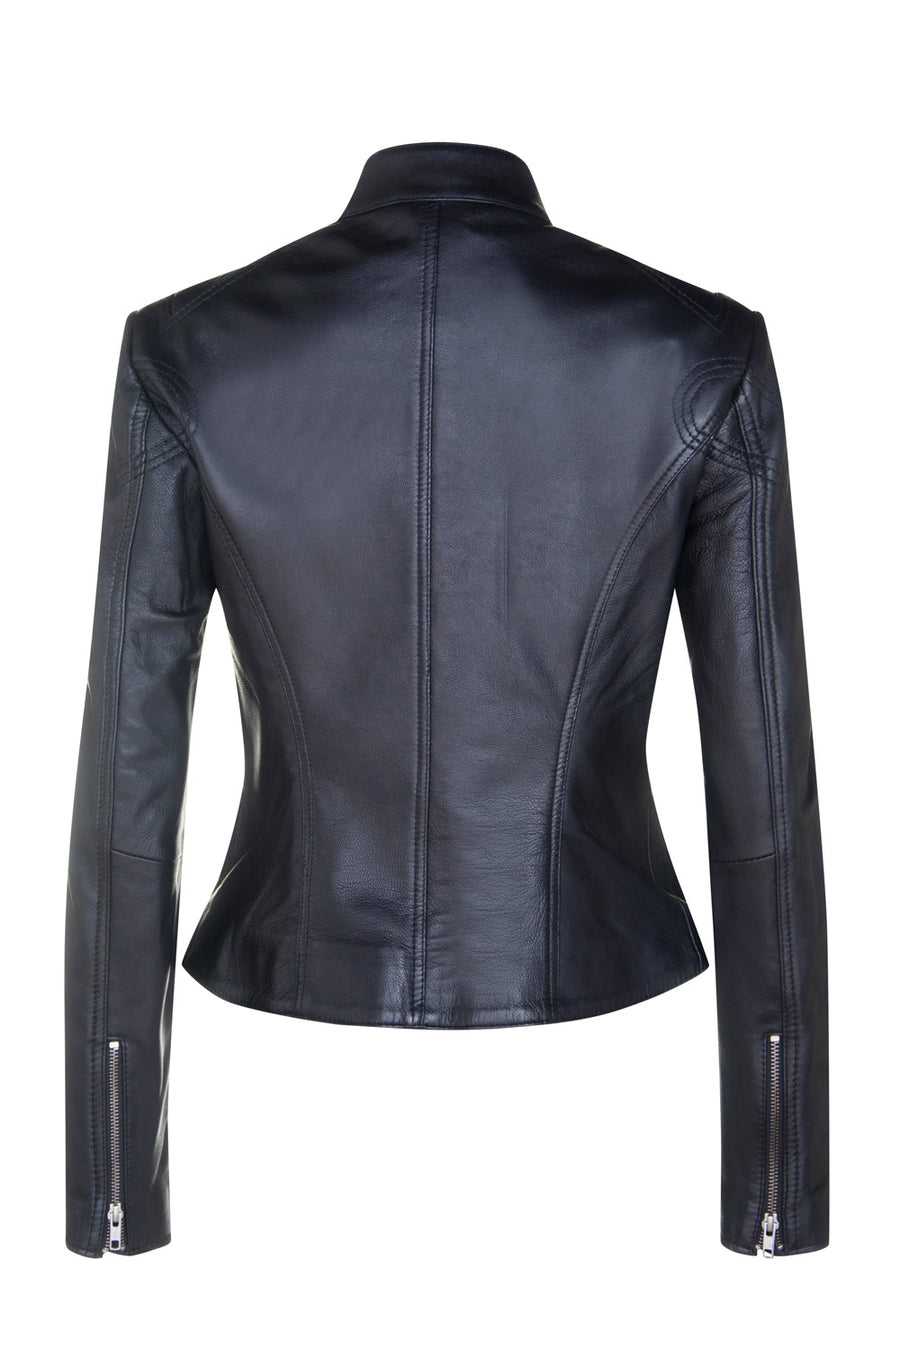 Ladies Vintage Style Biker Leather Jacket SR01 in Chestnut Brown or Black Lambskin